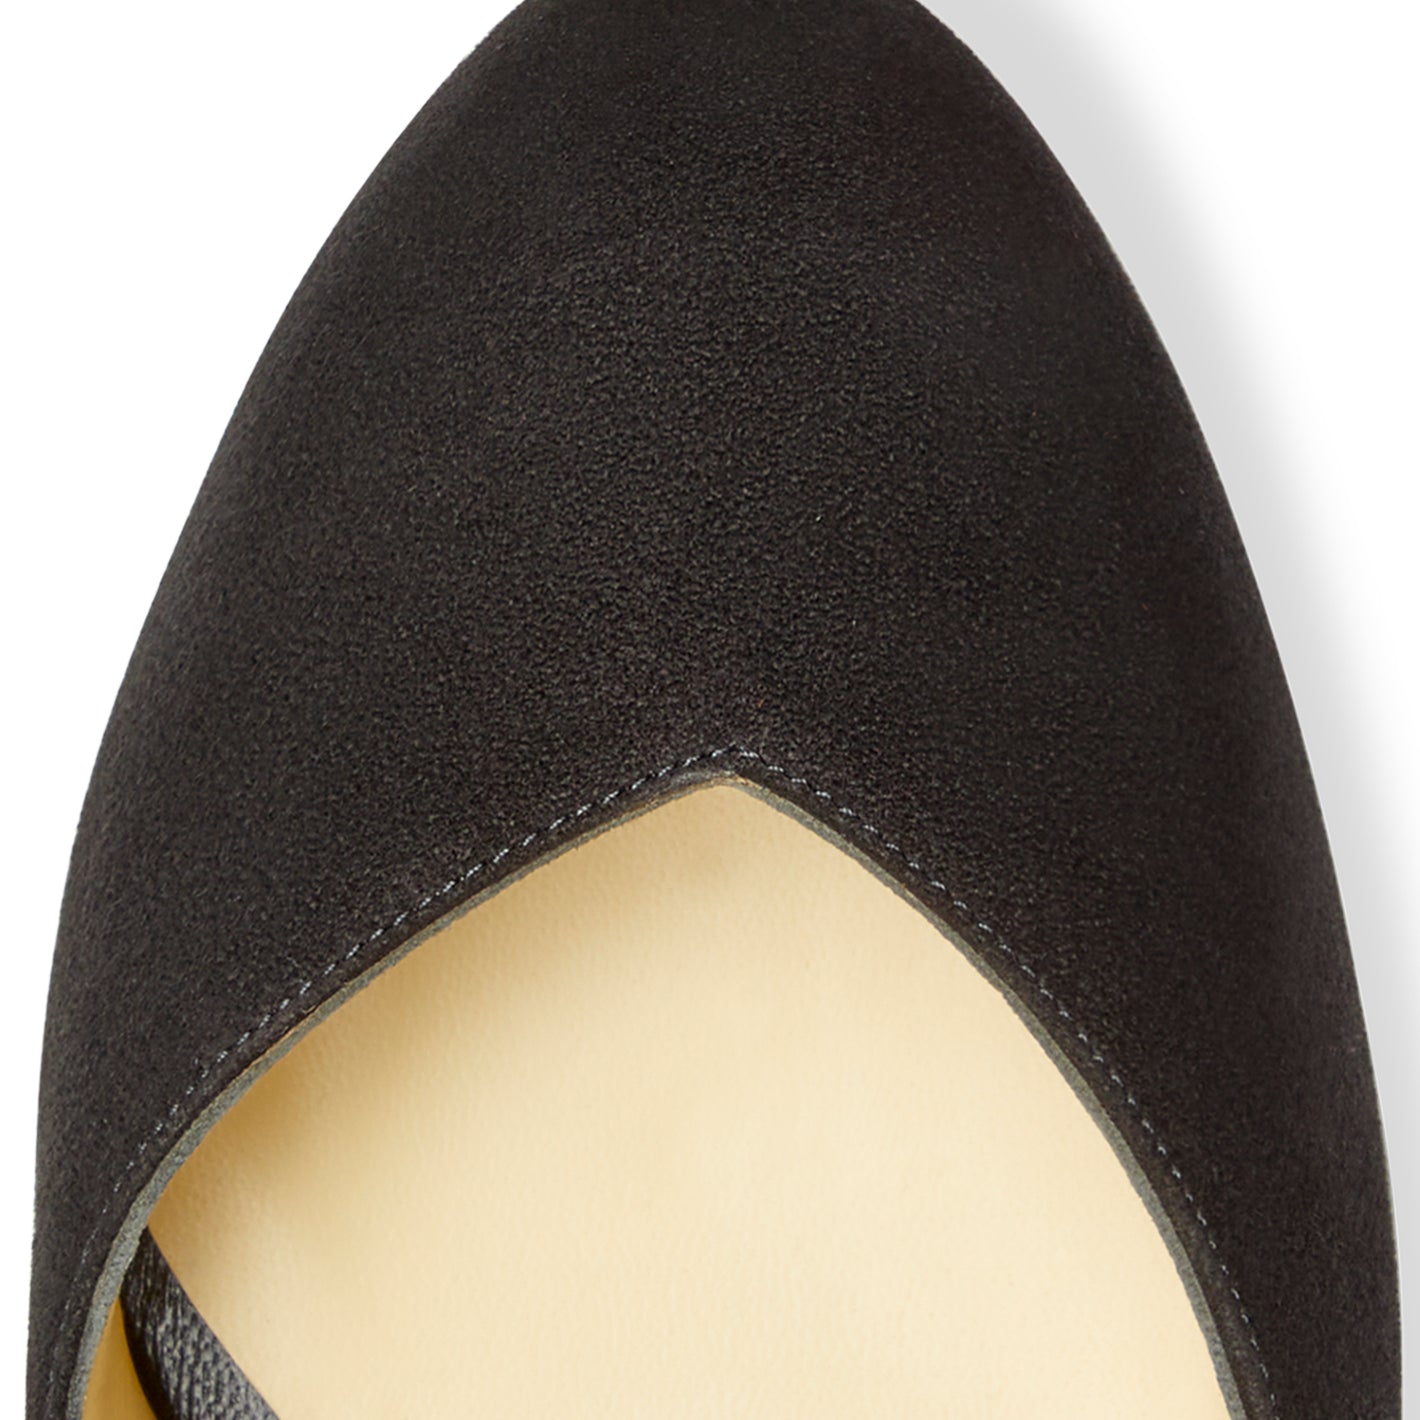 Sarah Flint wider toe box shoe detail